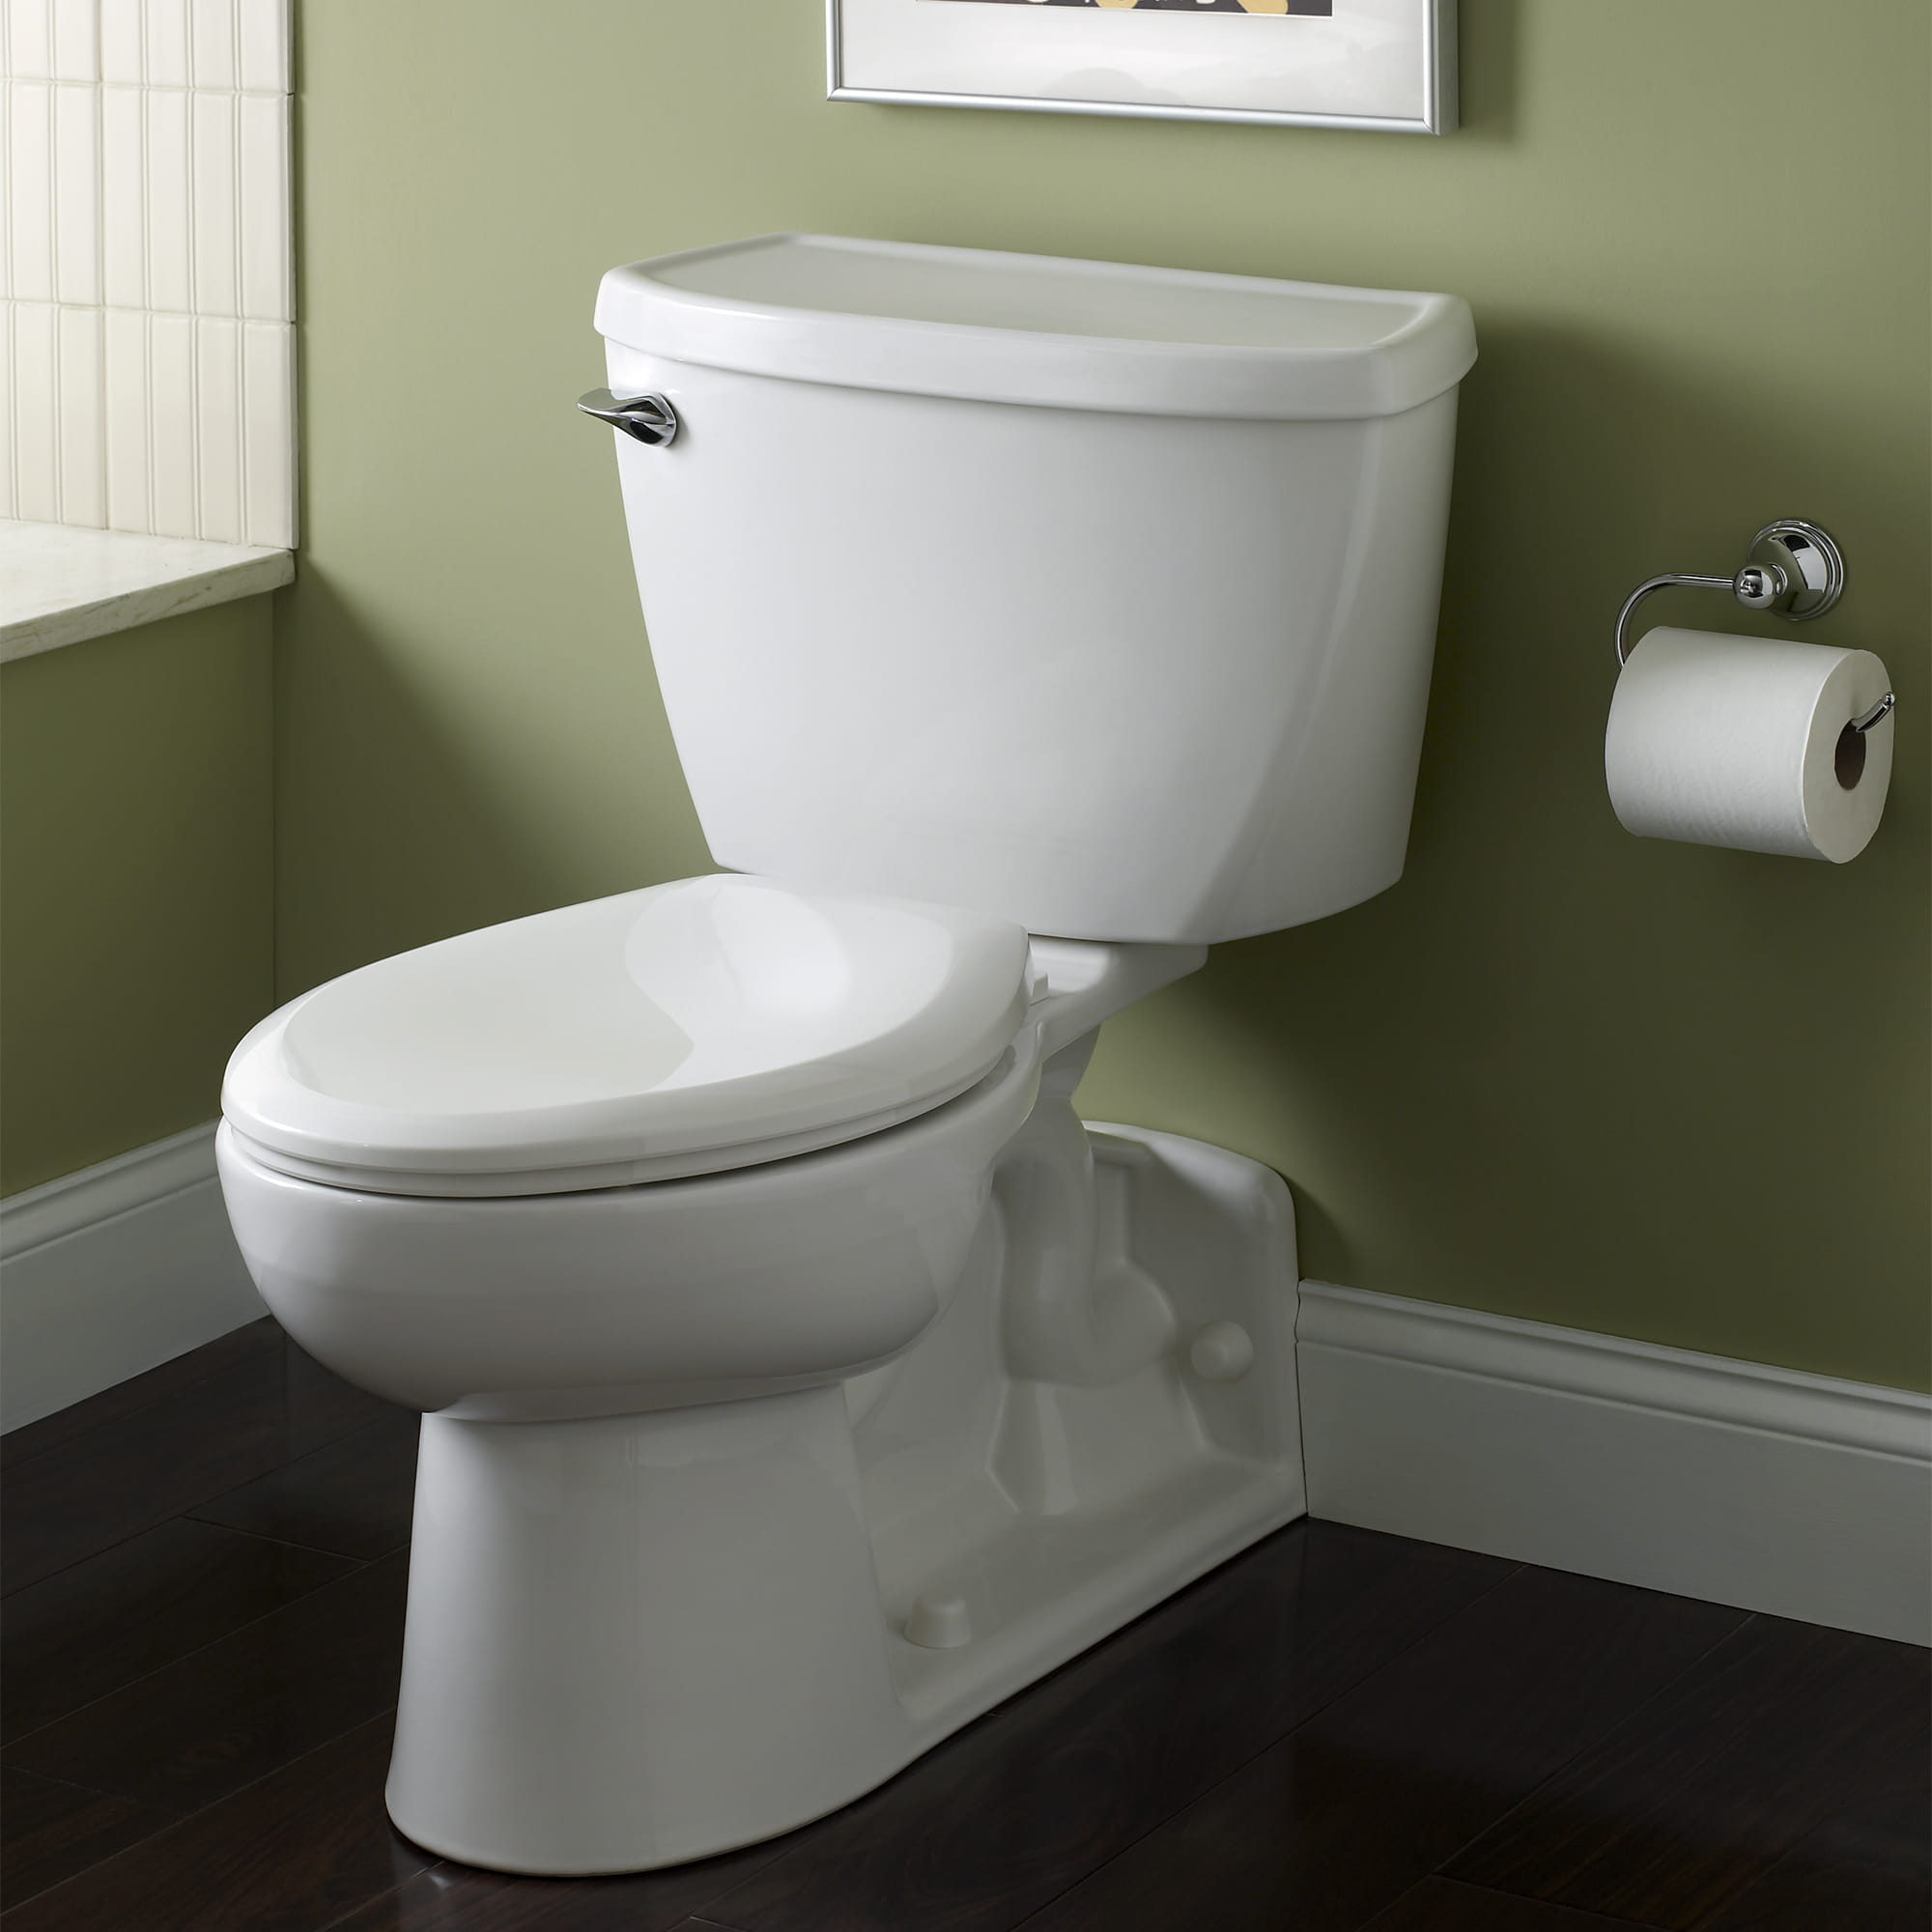 Yorkville™ - Toilette allongée deux pièces avec EverClean® et pression assistée, 1,6 gpc/6,0 lpc, avec sortie arrière